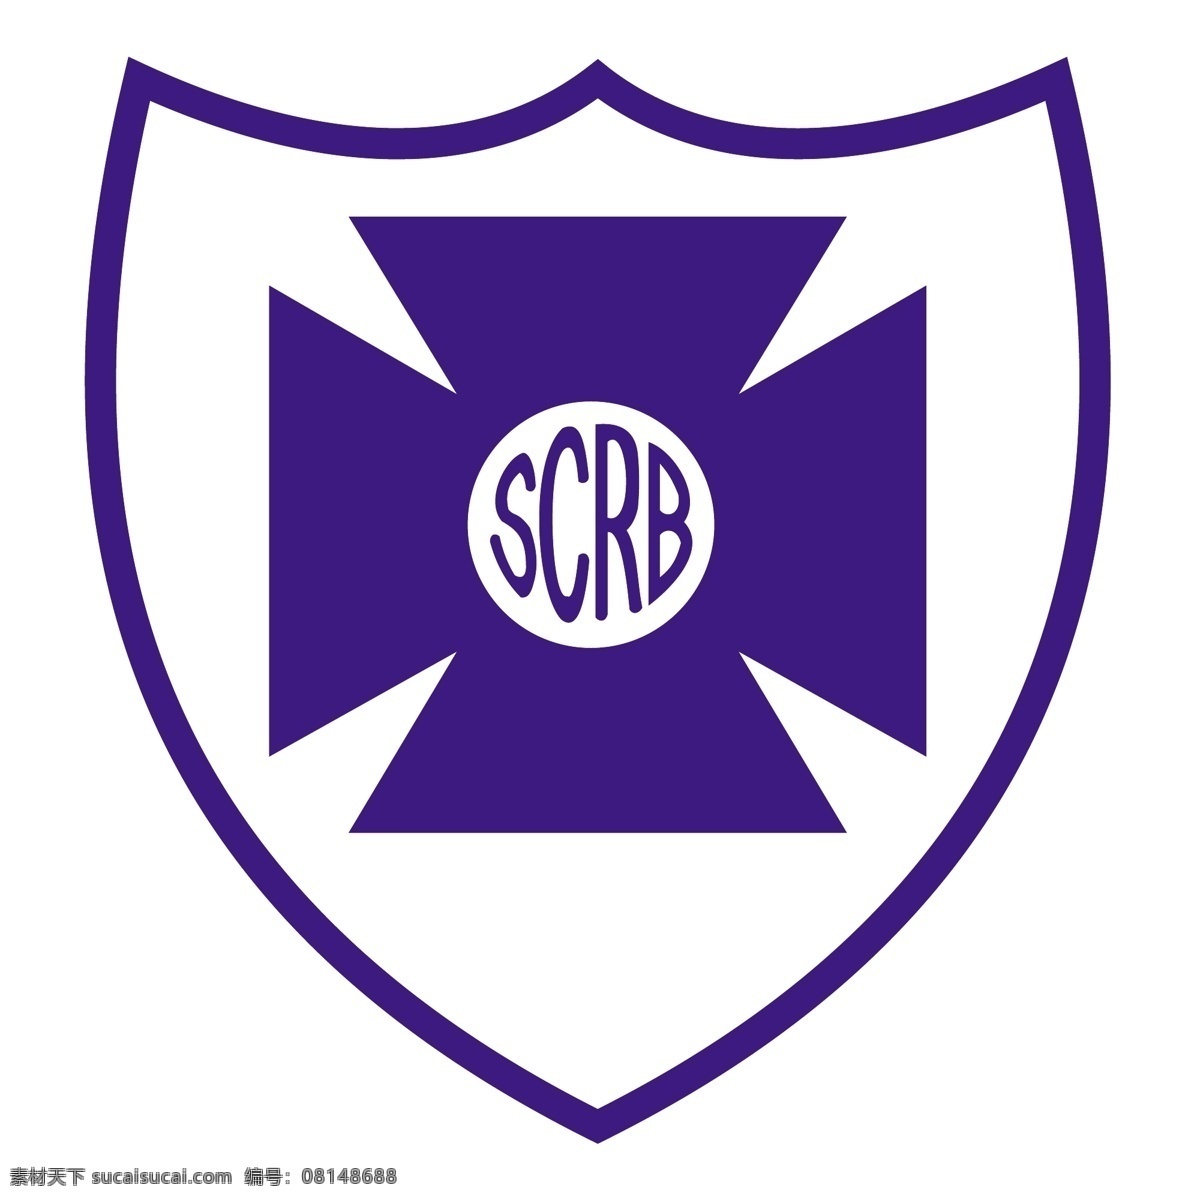 体育俱乐部 里奥 布朗库 de 阿莱格里 es 自由 运动俱乐部 标志 psd源文件 logo设计